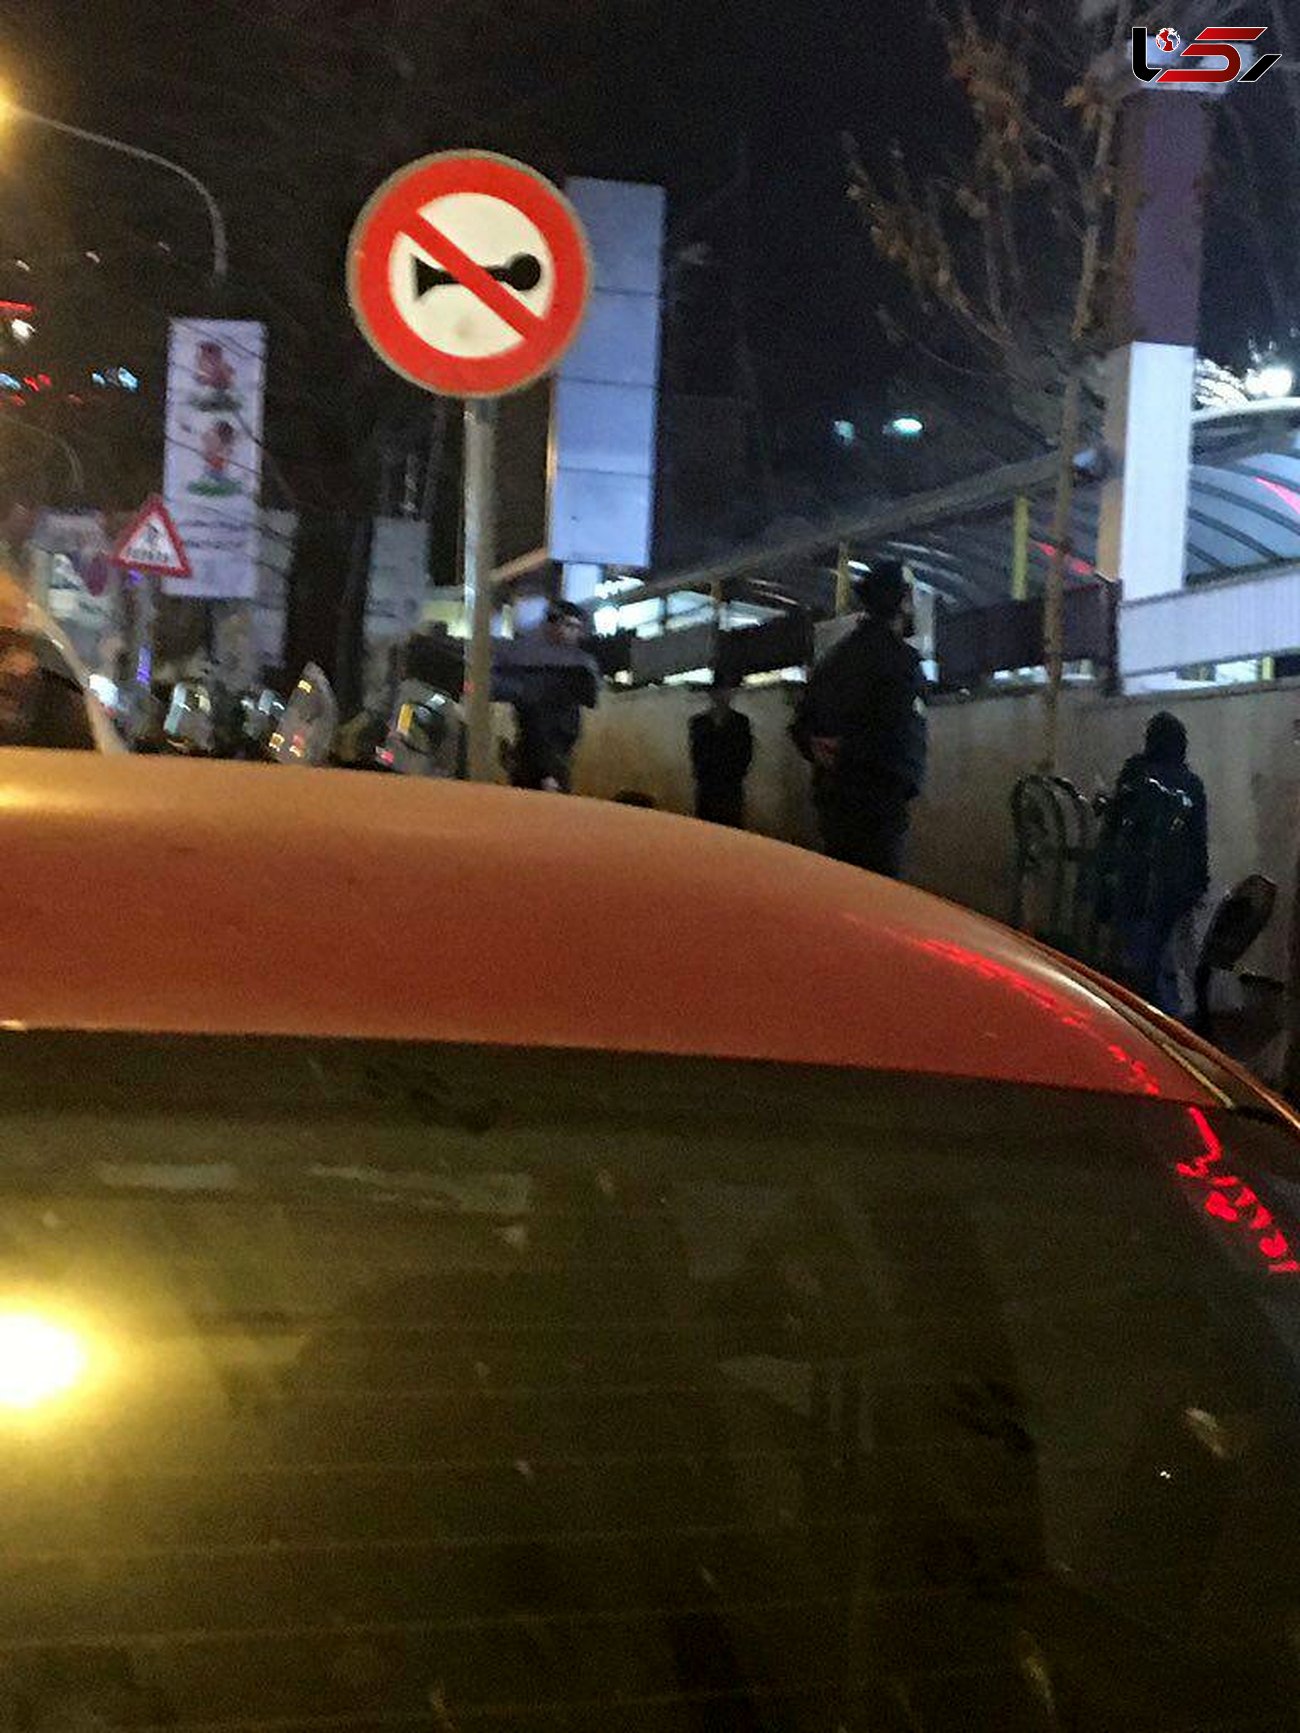 رییس جمهوری با چشمانی اشکبار  بیمارستان تجریش را ترک کرد+عکس مقابل بیمارستان